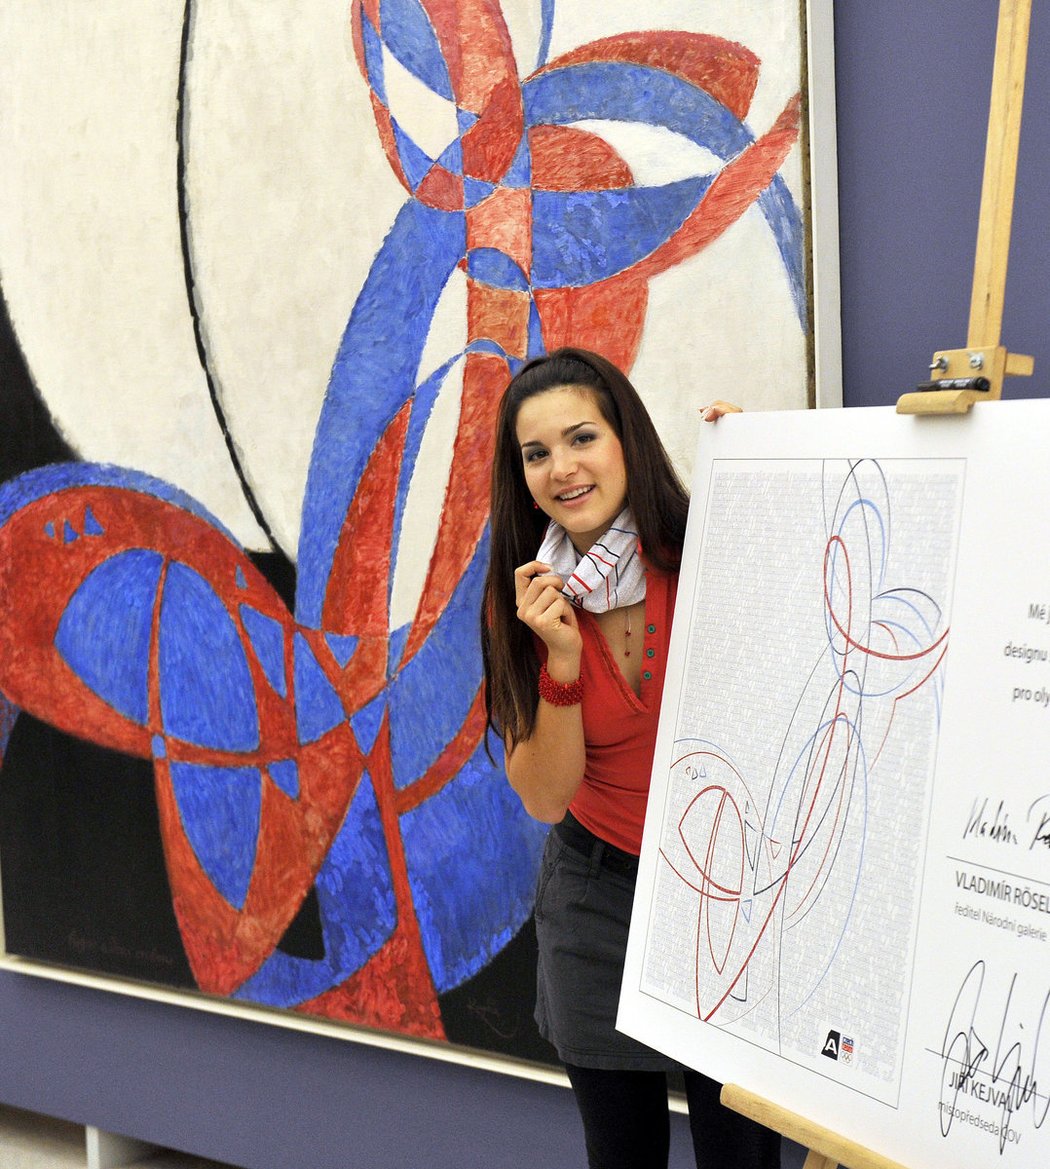 Kolekci oblečení pro české sportovce na olympiádu v Londýně inspiroval obraz Františka Kupky, Tereza Huříková představuje speciální šátek, na kterém bude podepsáno 400 fanoušků